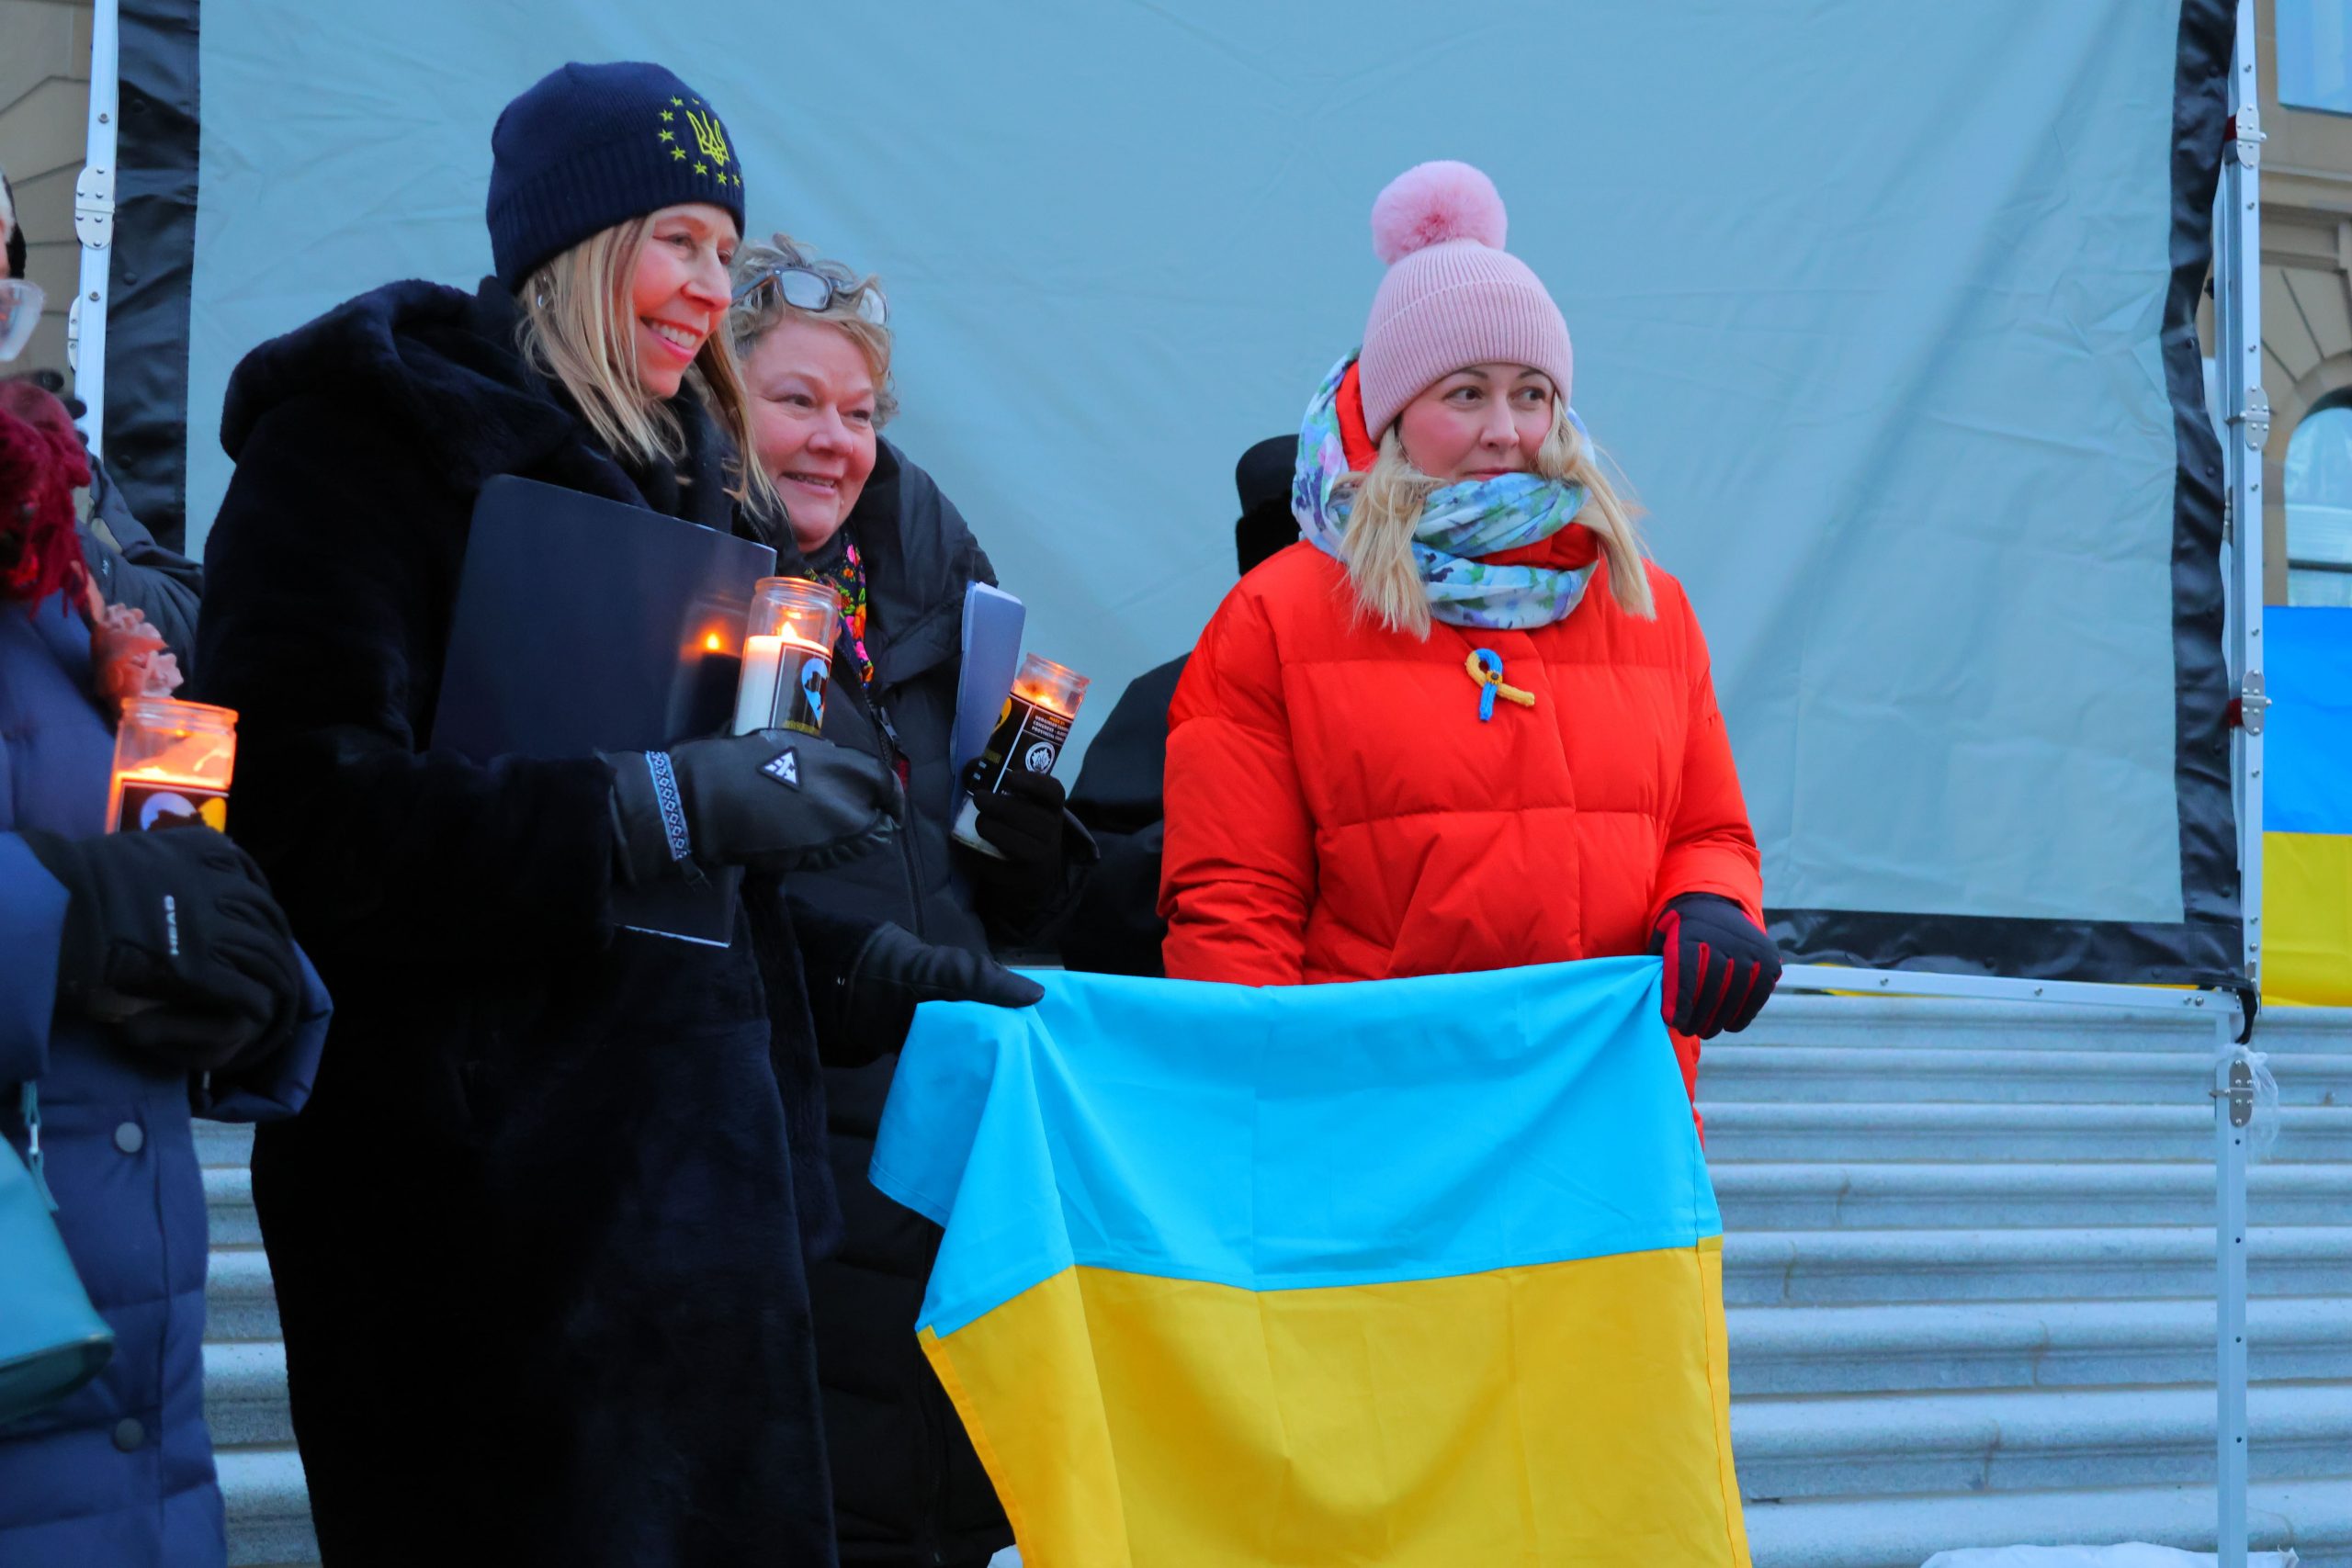 Unbreakable Ukraine: United We Stand Edmonton Rally